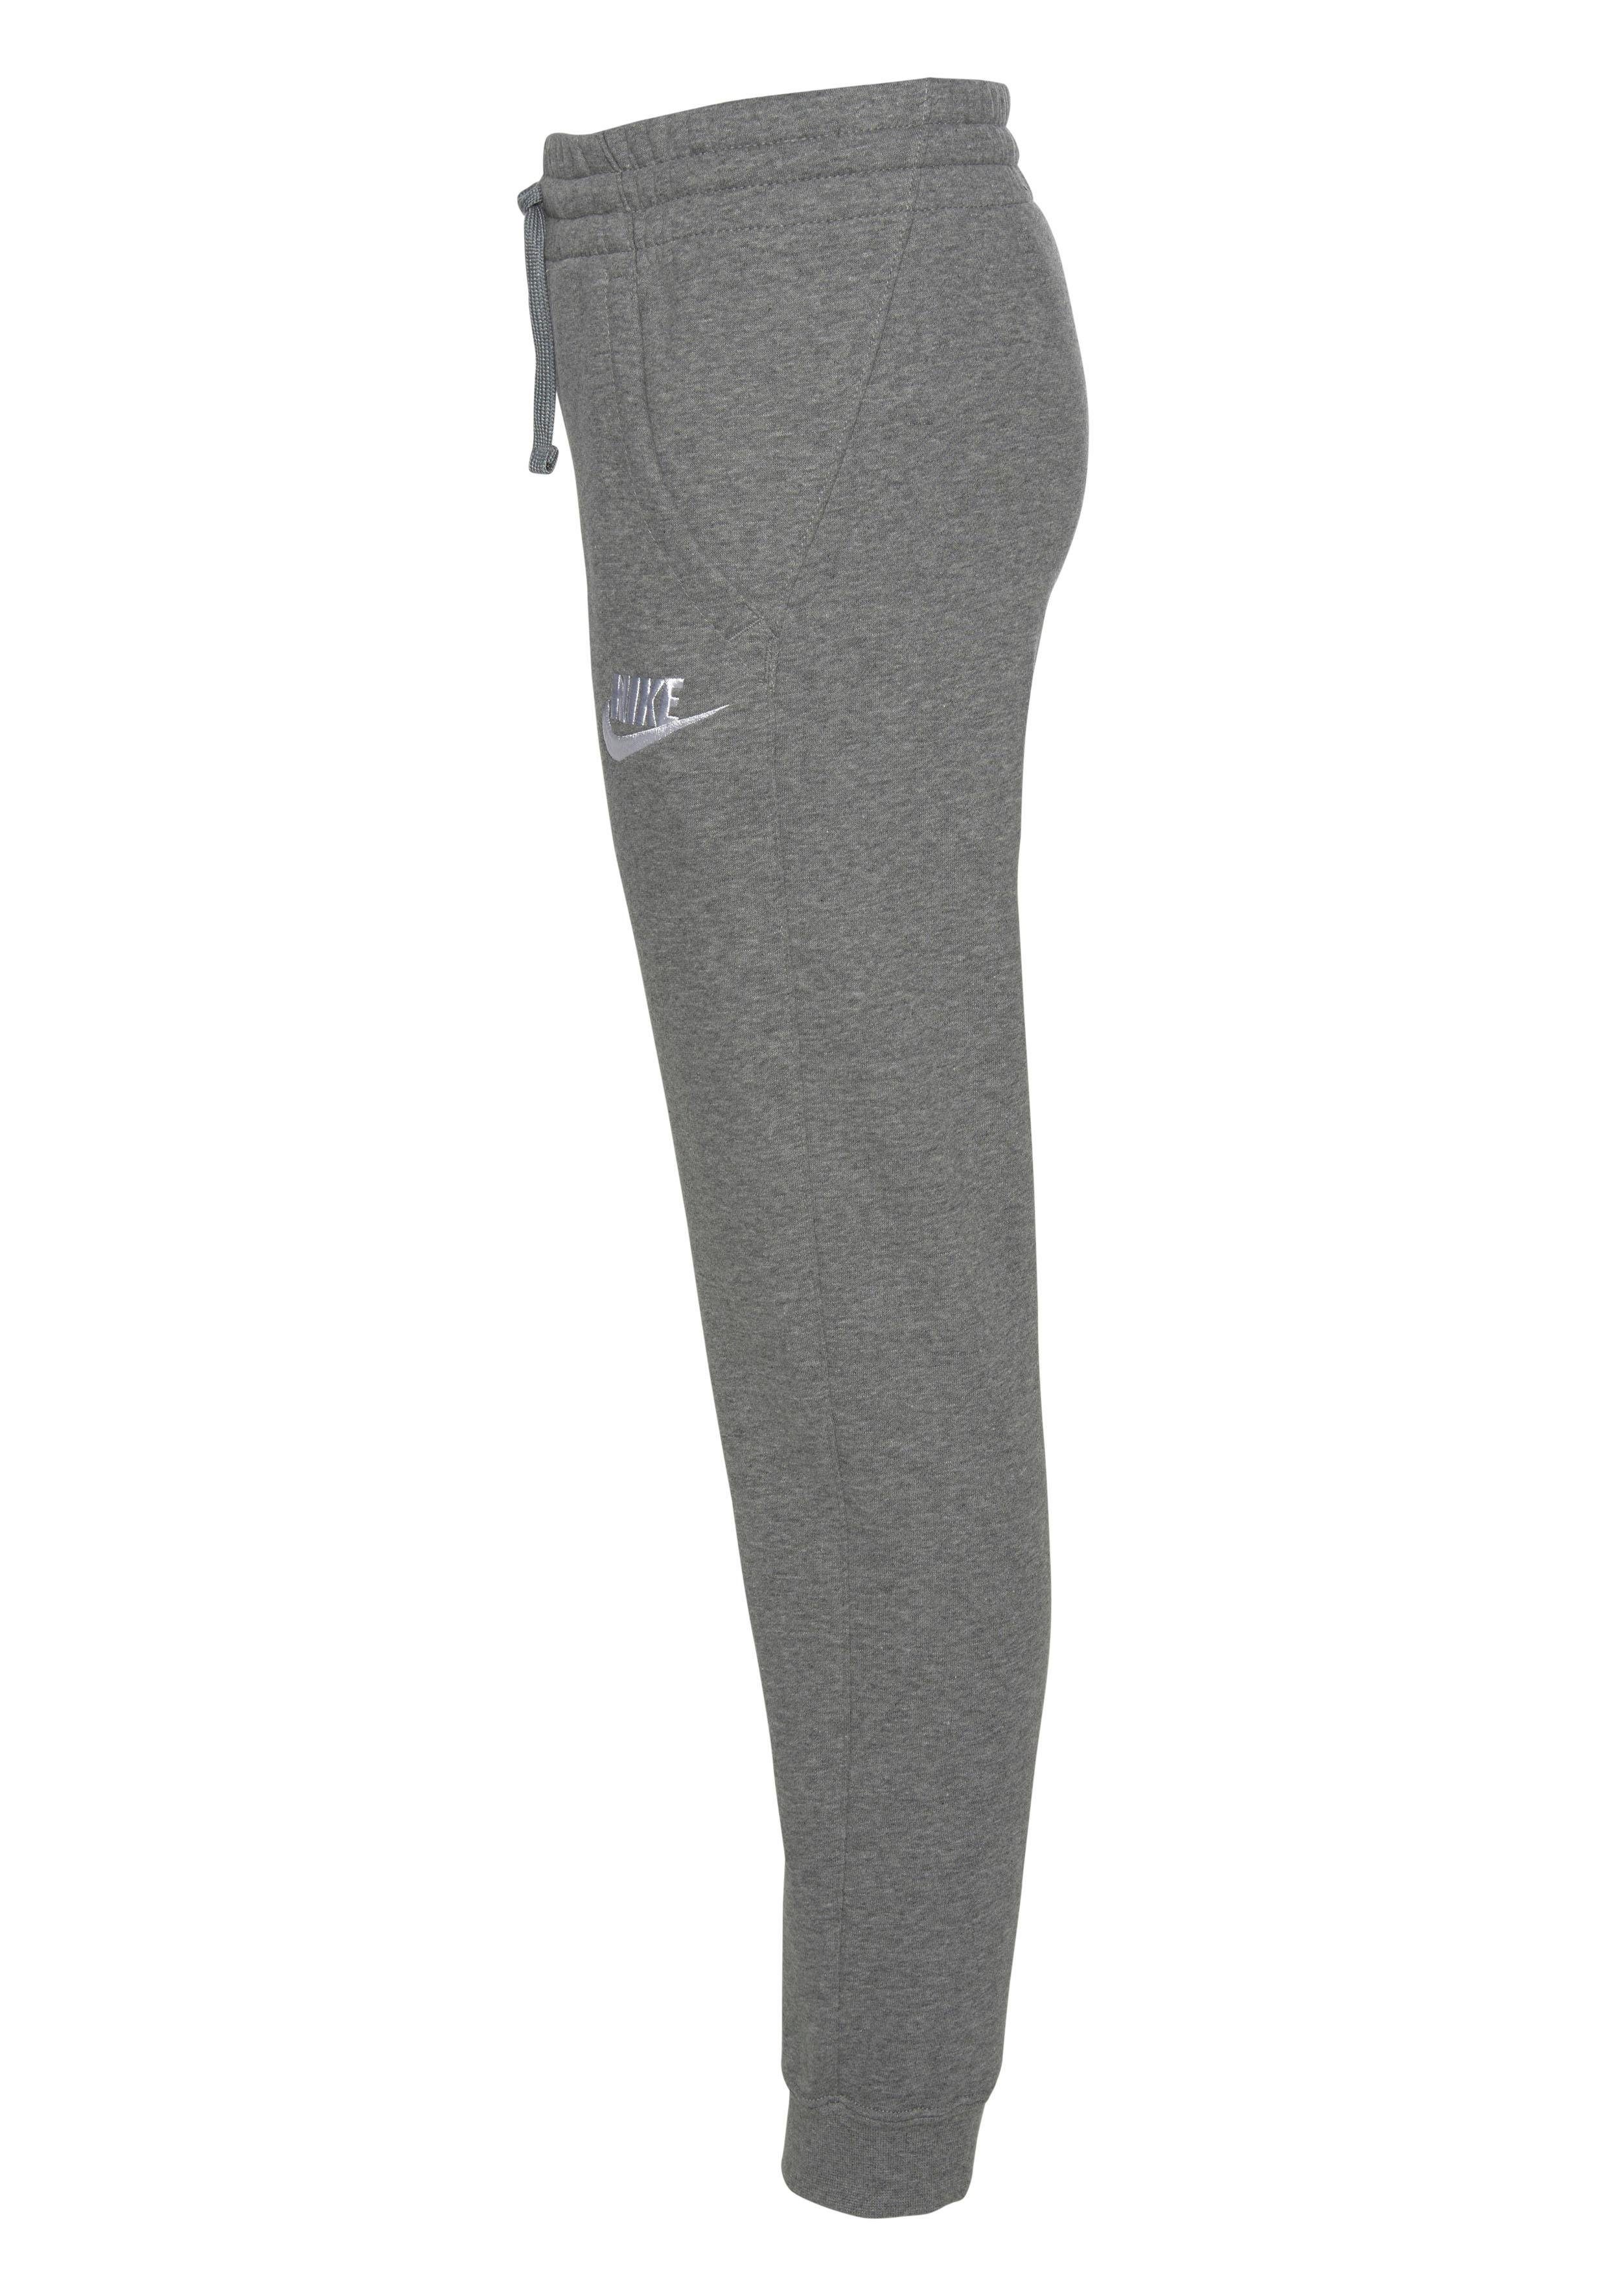 NSW PANT Jogginghose FLEECE B Nike grau-meliert JOGGER CLUB Sportswear